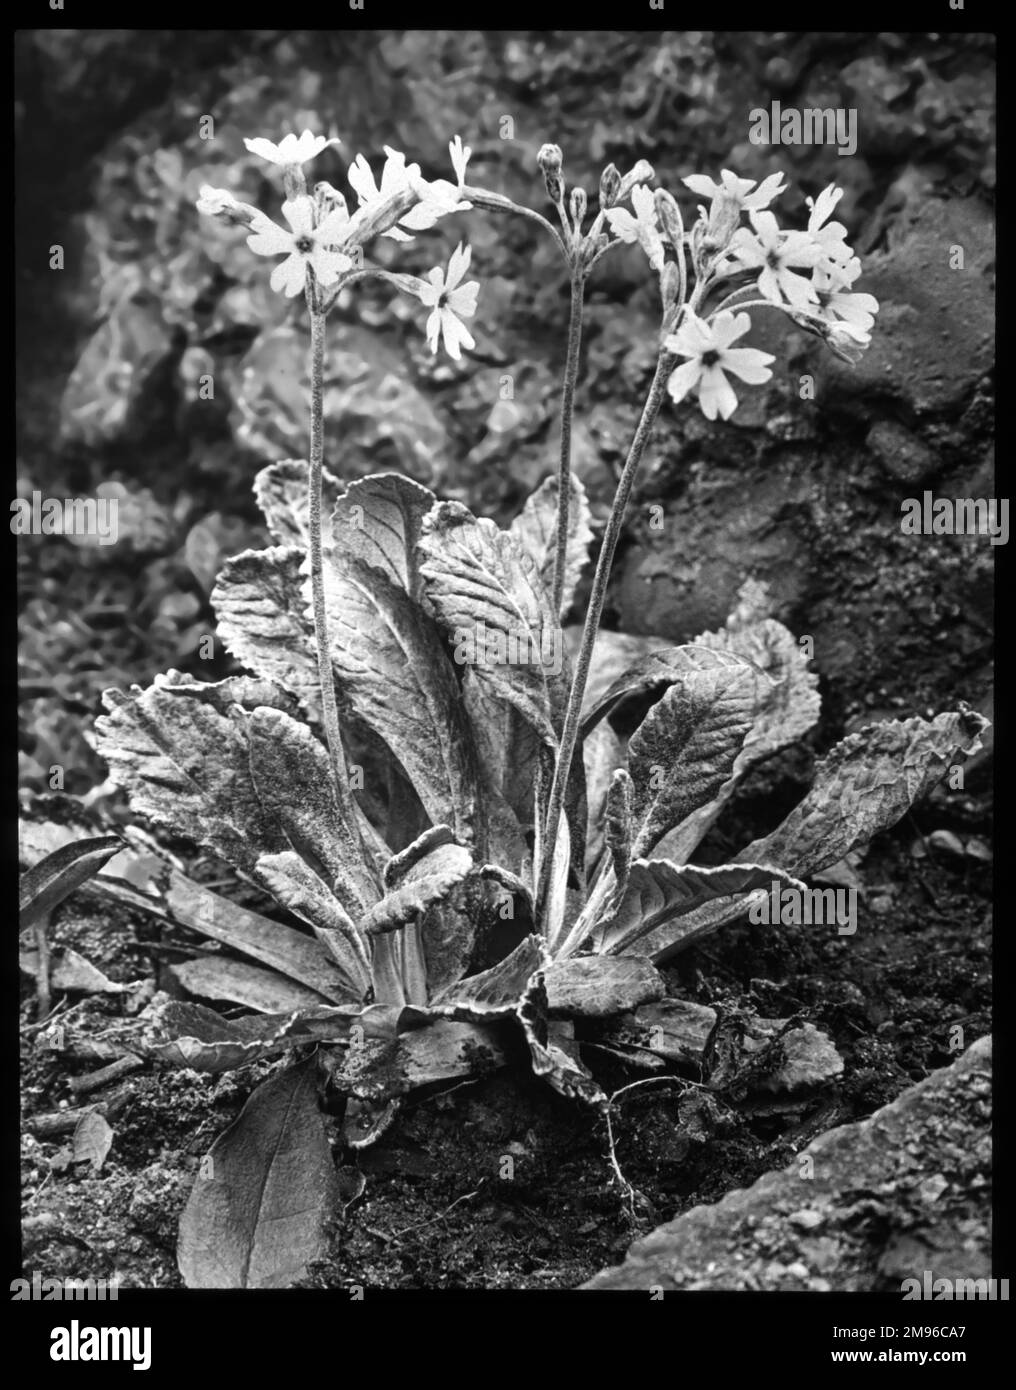 Primula Frondosa, perenne erbaceo della famiglia delle Primulacee. Ha fiori rosa-malva con centri gialli. Il nome latino primula si riferisce ai fiori che sono tra i primi ad aprirsi in primavera. Foto Stock